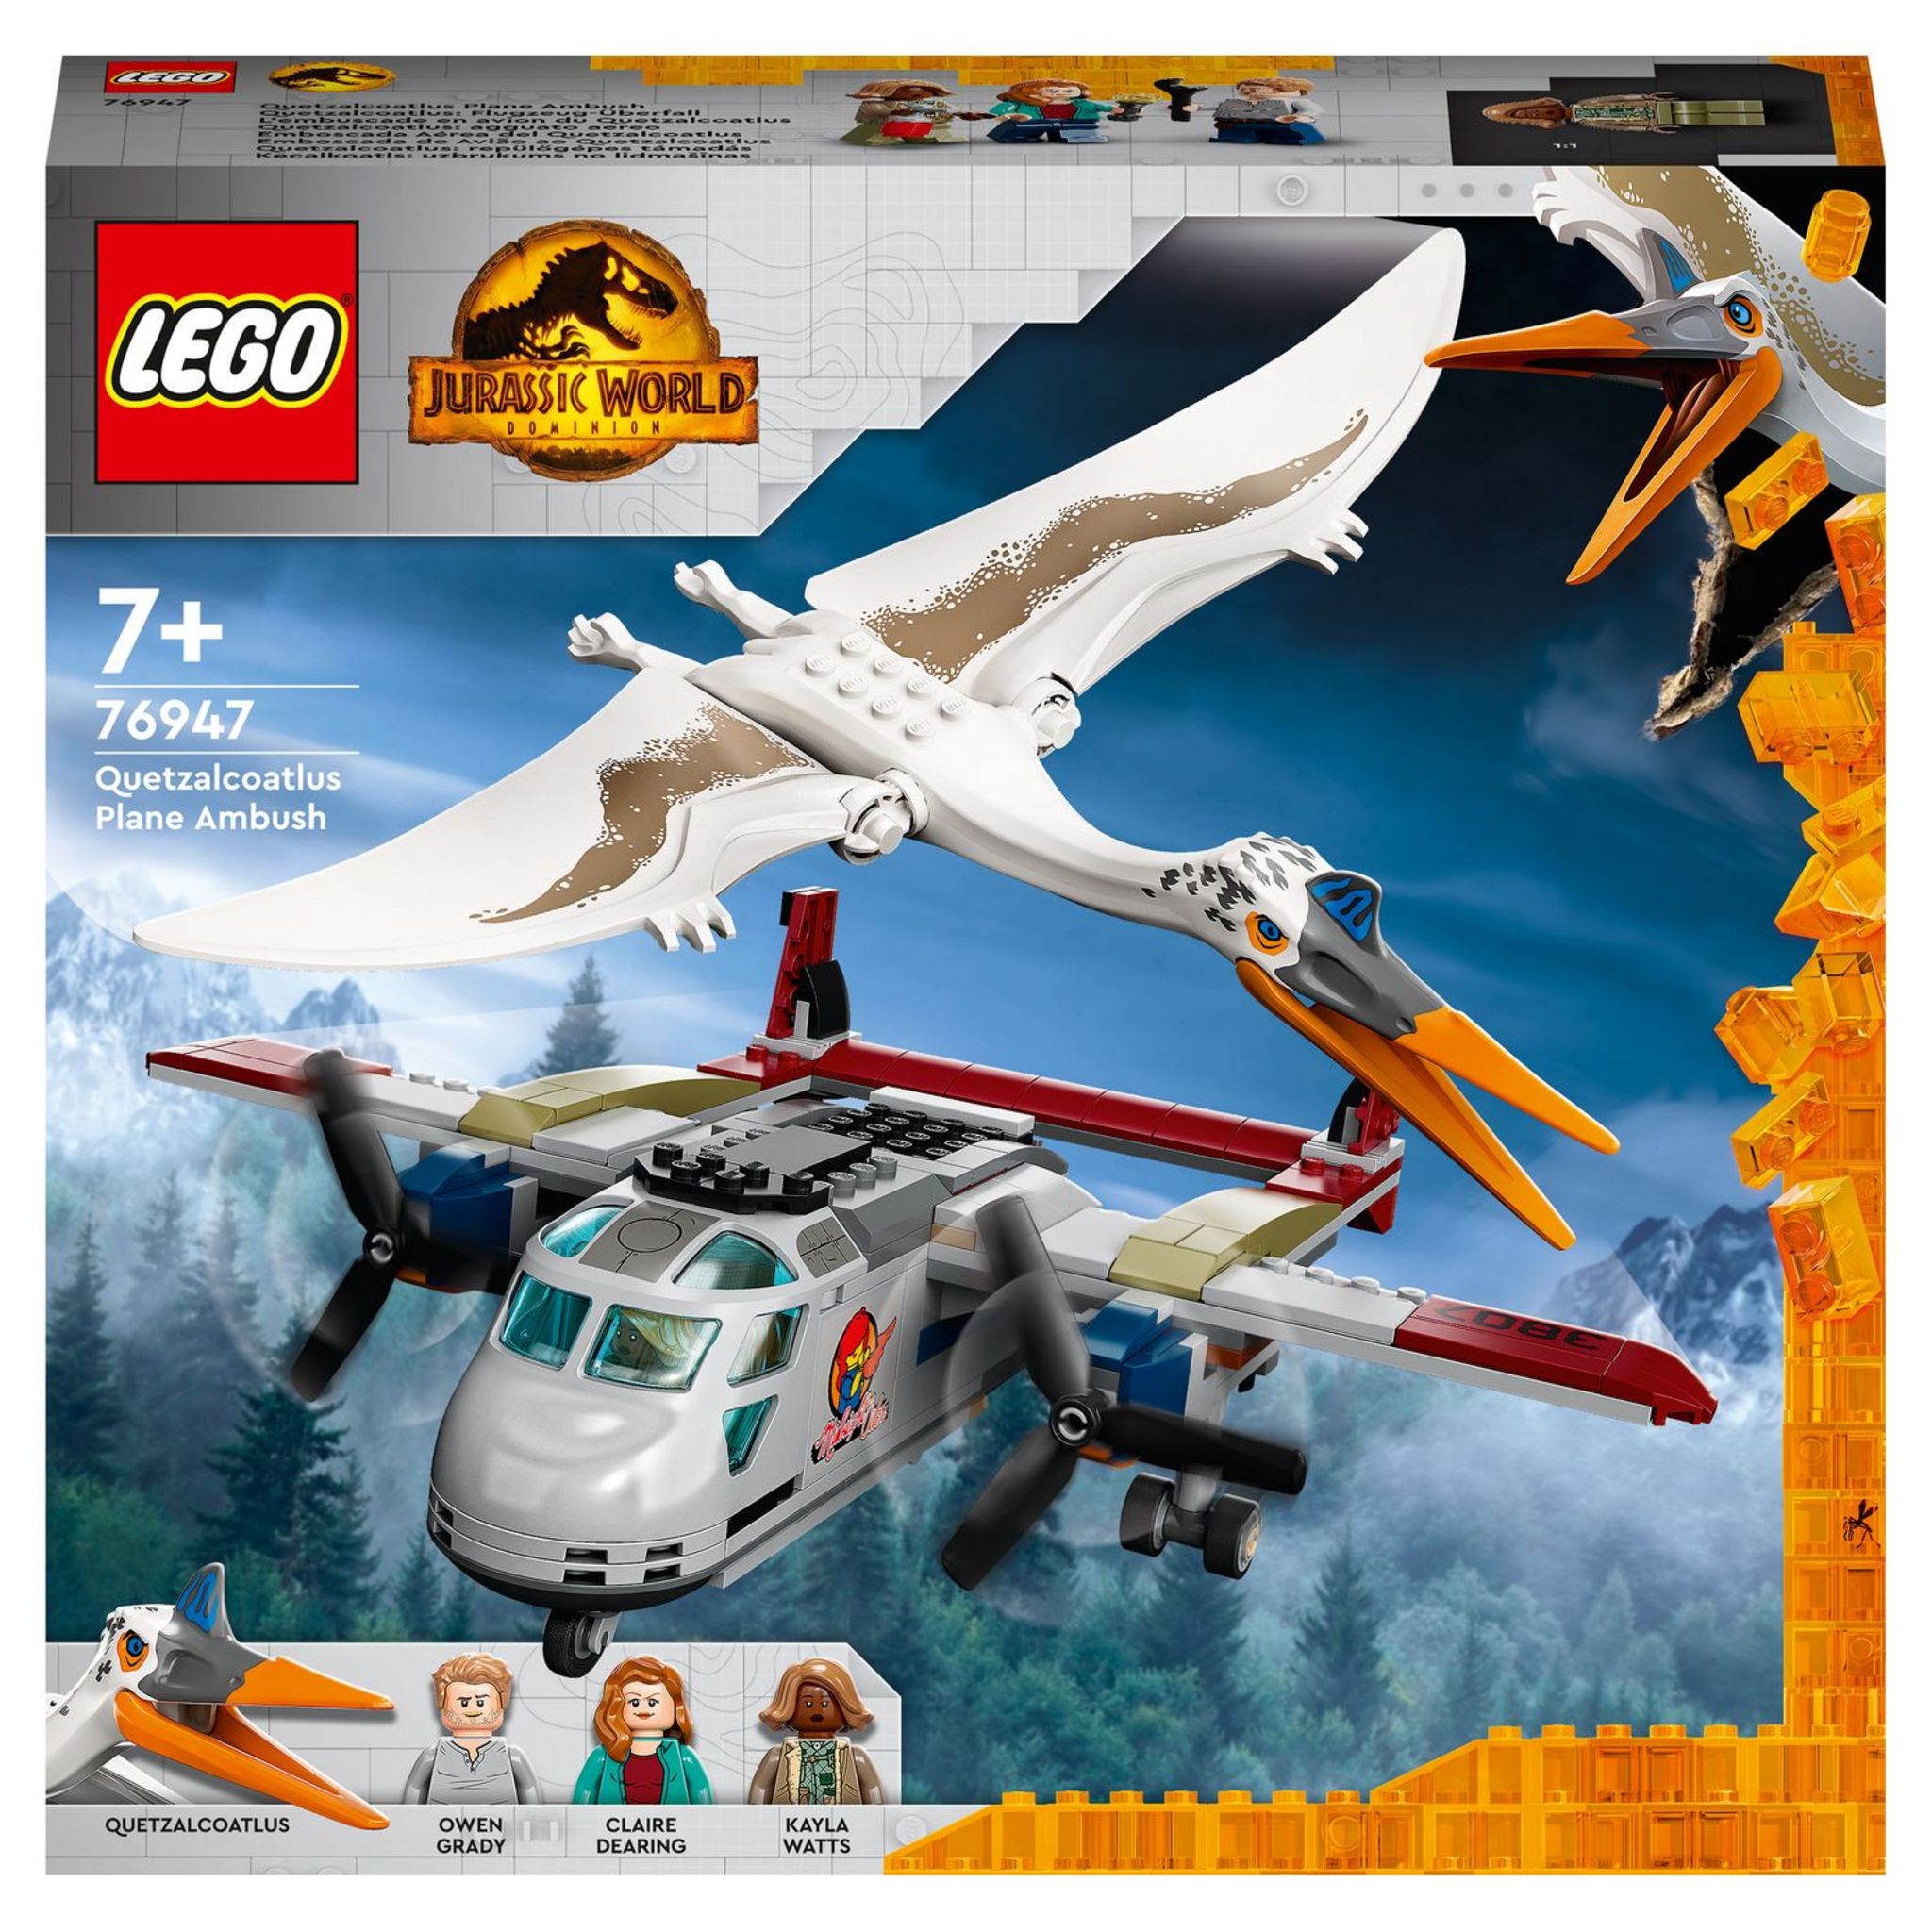 LEGO Jurassic World 76947 L’Embuscade en Avion du Quetzalcoatlus,  Dinosaure Jouet et Avion pas cher 